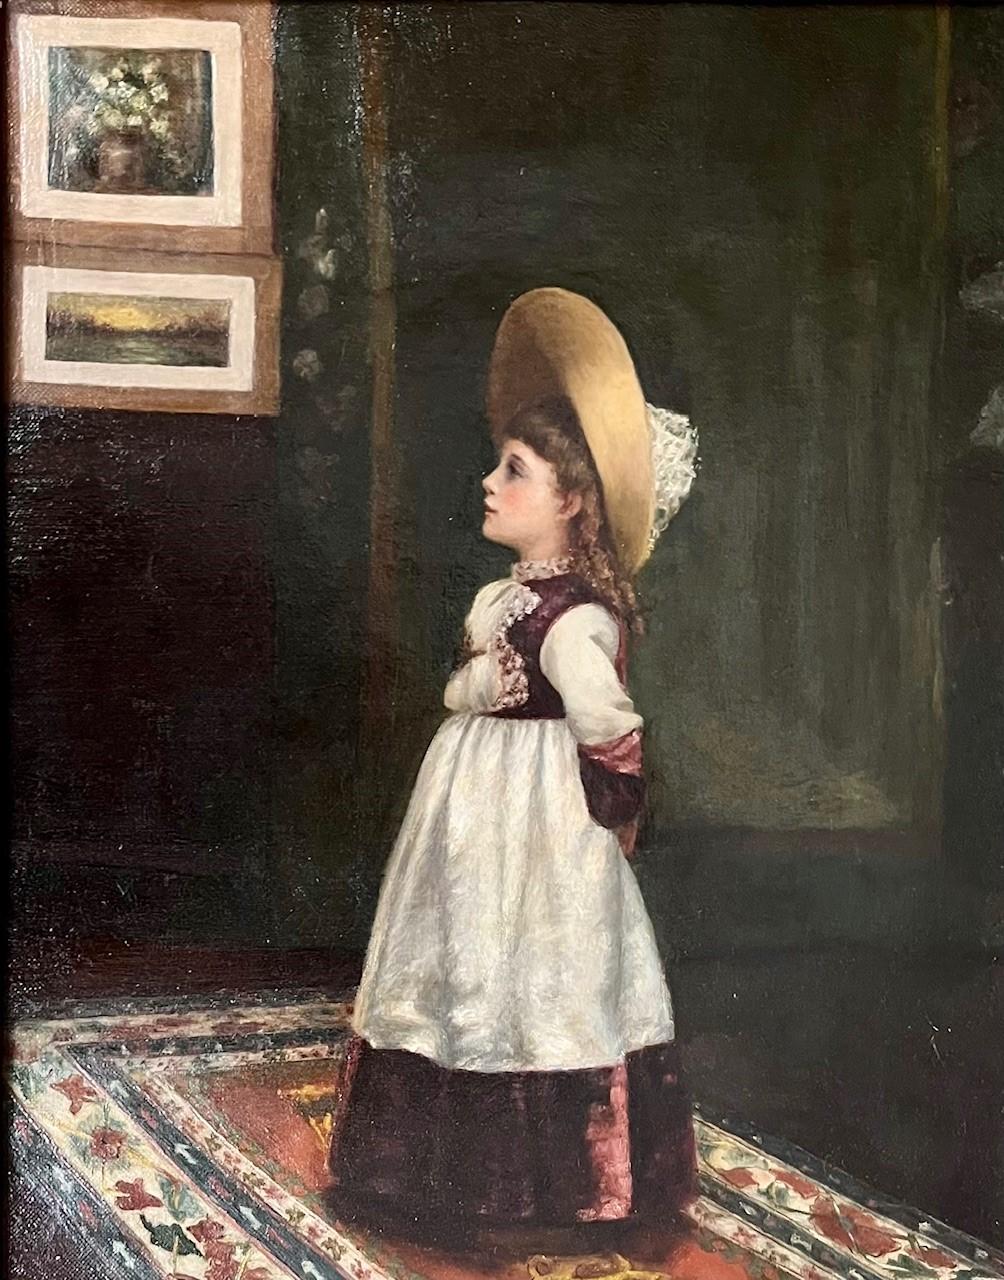 Portrait à l'huile d'une jeune fille de l'école américaine du 19e siècle.

Merveilleux portrait antique d'une charmante petite fille debout dans une pièce aux tons chauds avec un tapis oriental et une tapisserie murale. Elle semble regarder une